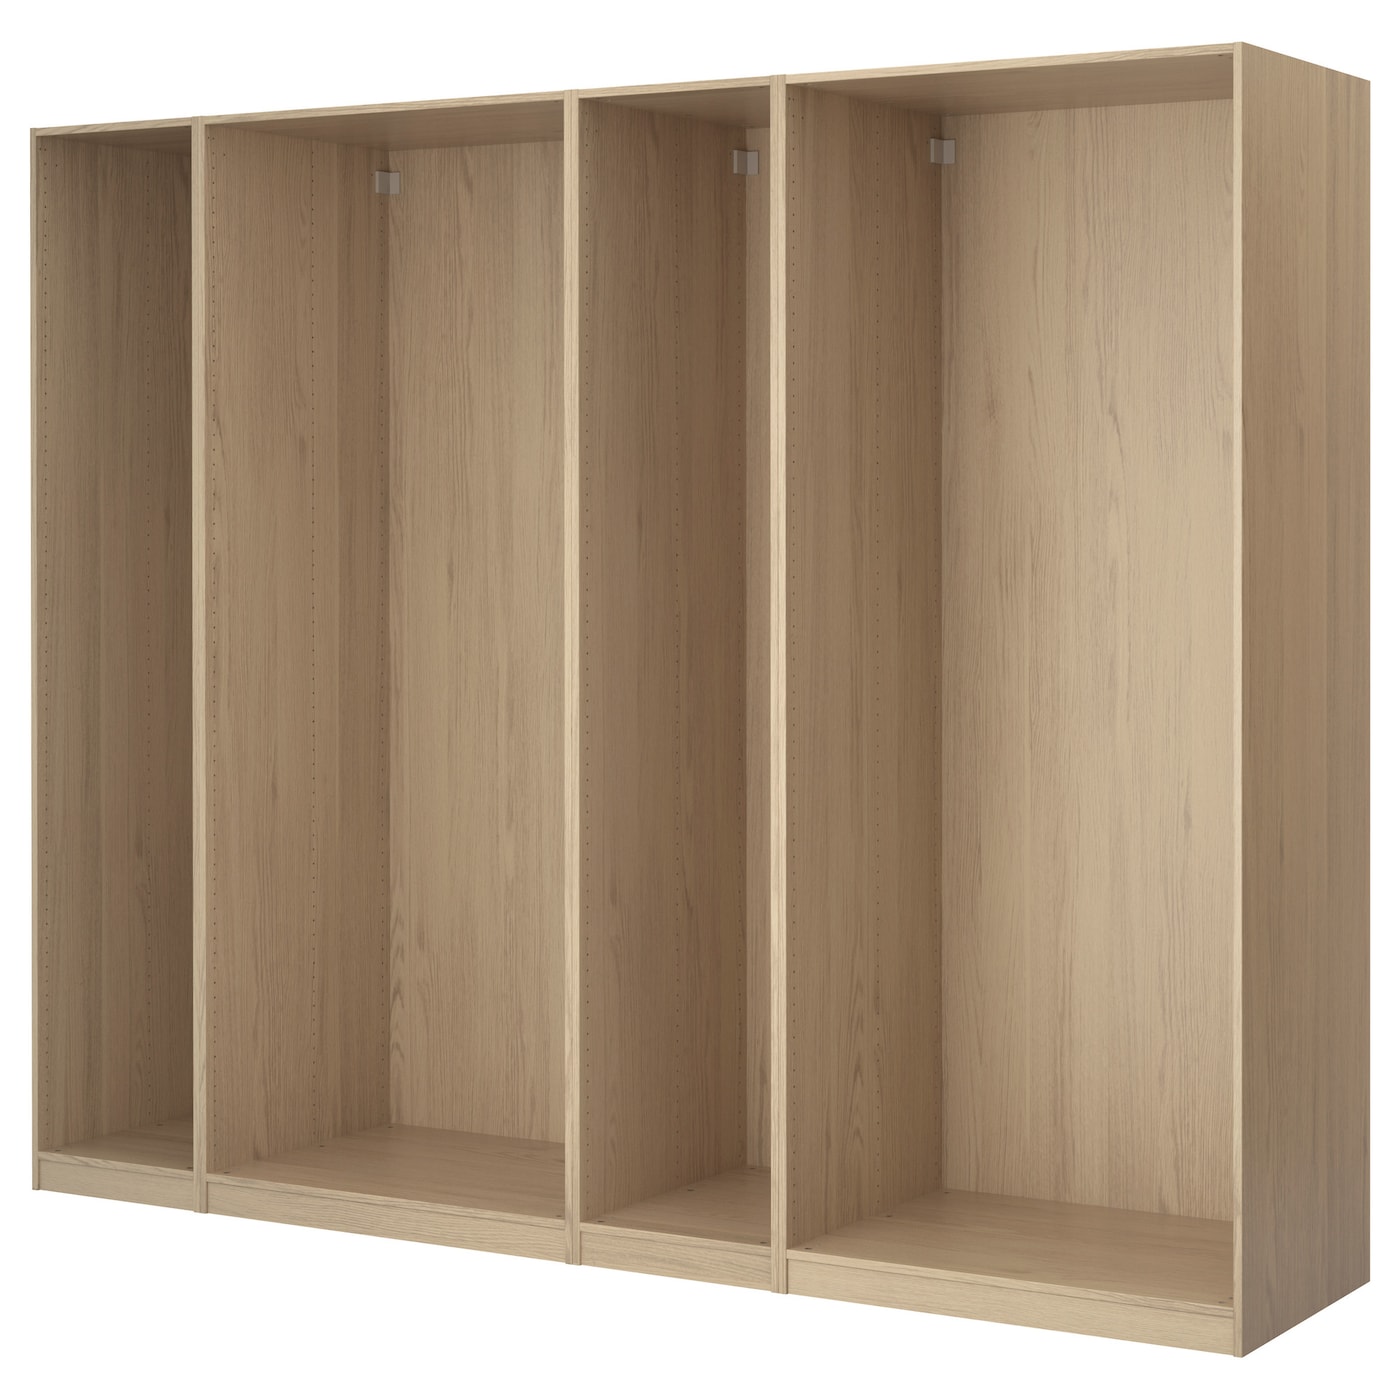 4 каркаса гардероба - PAX IKEA/ ПАКС ИКЕА, 300х58х201 см, коричневый